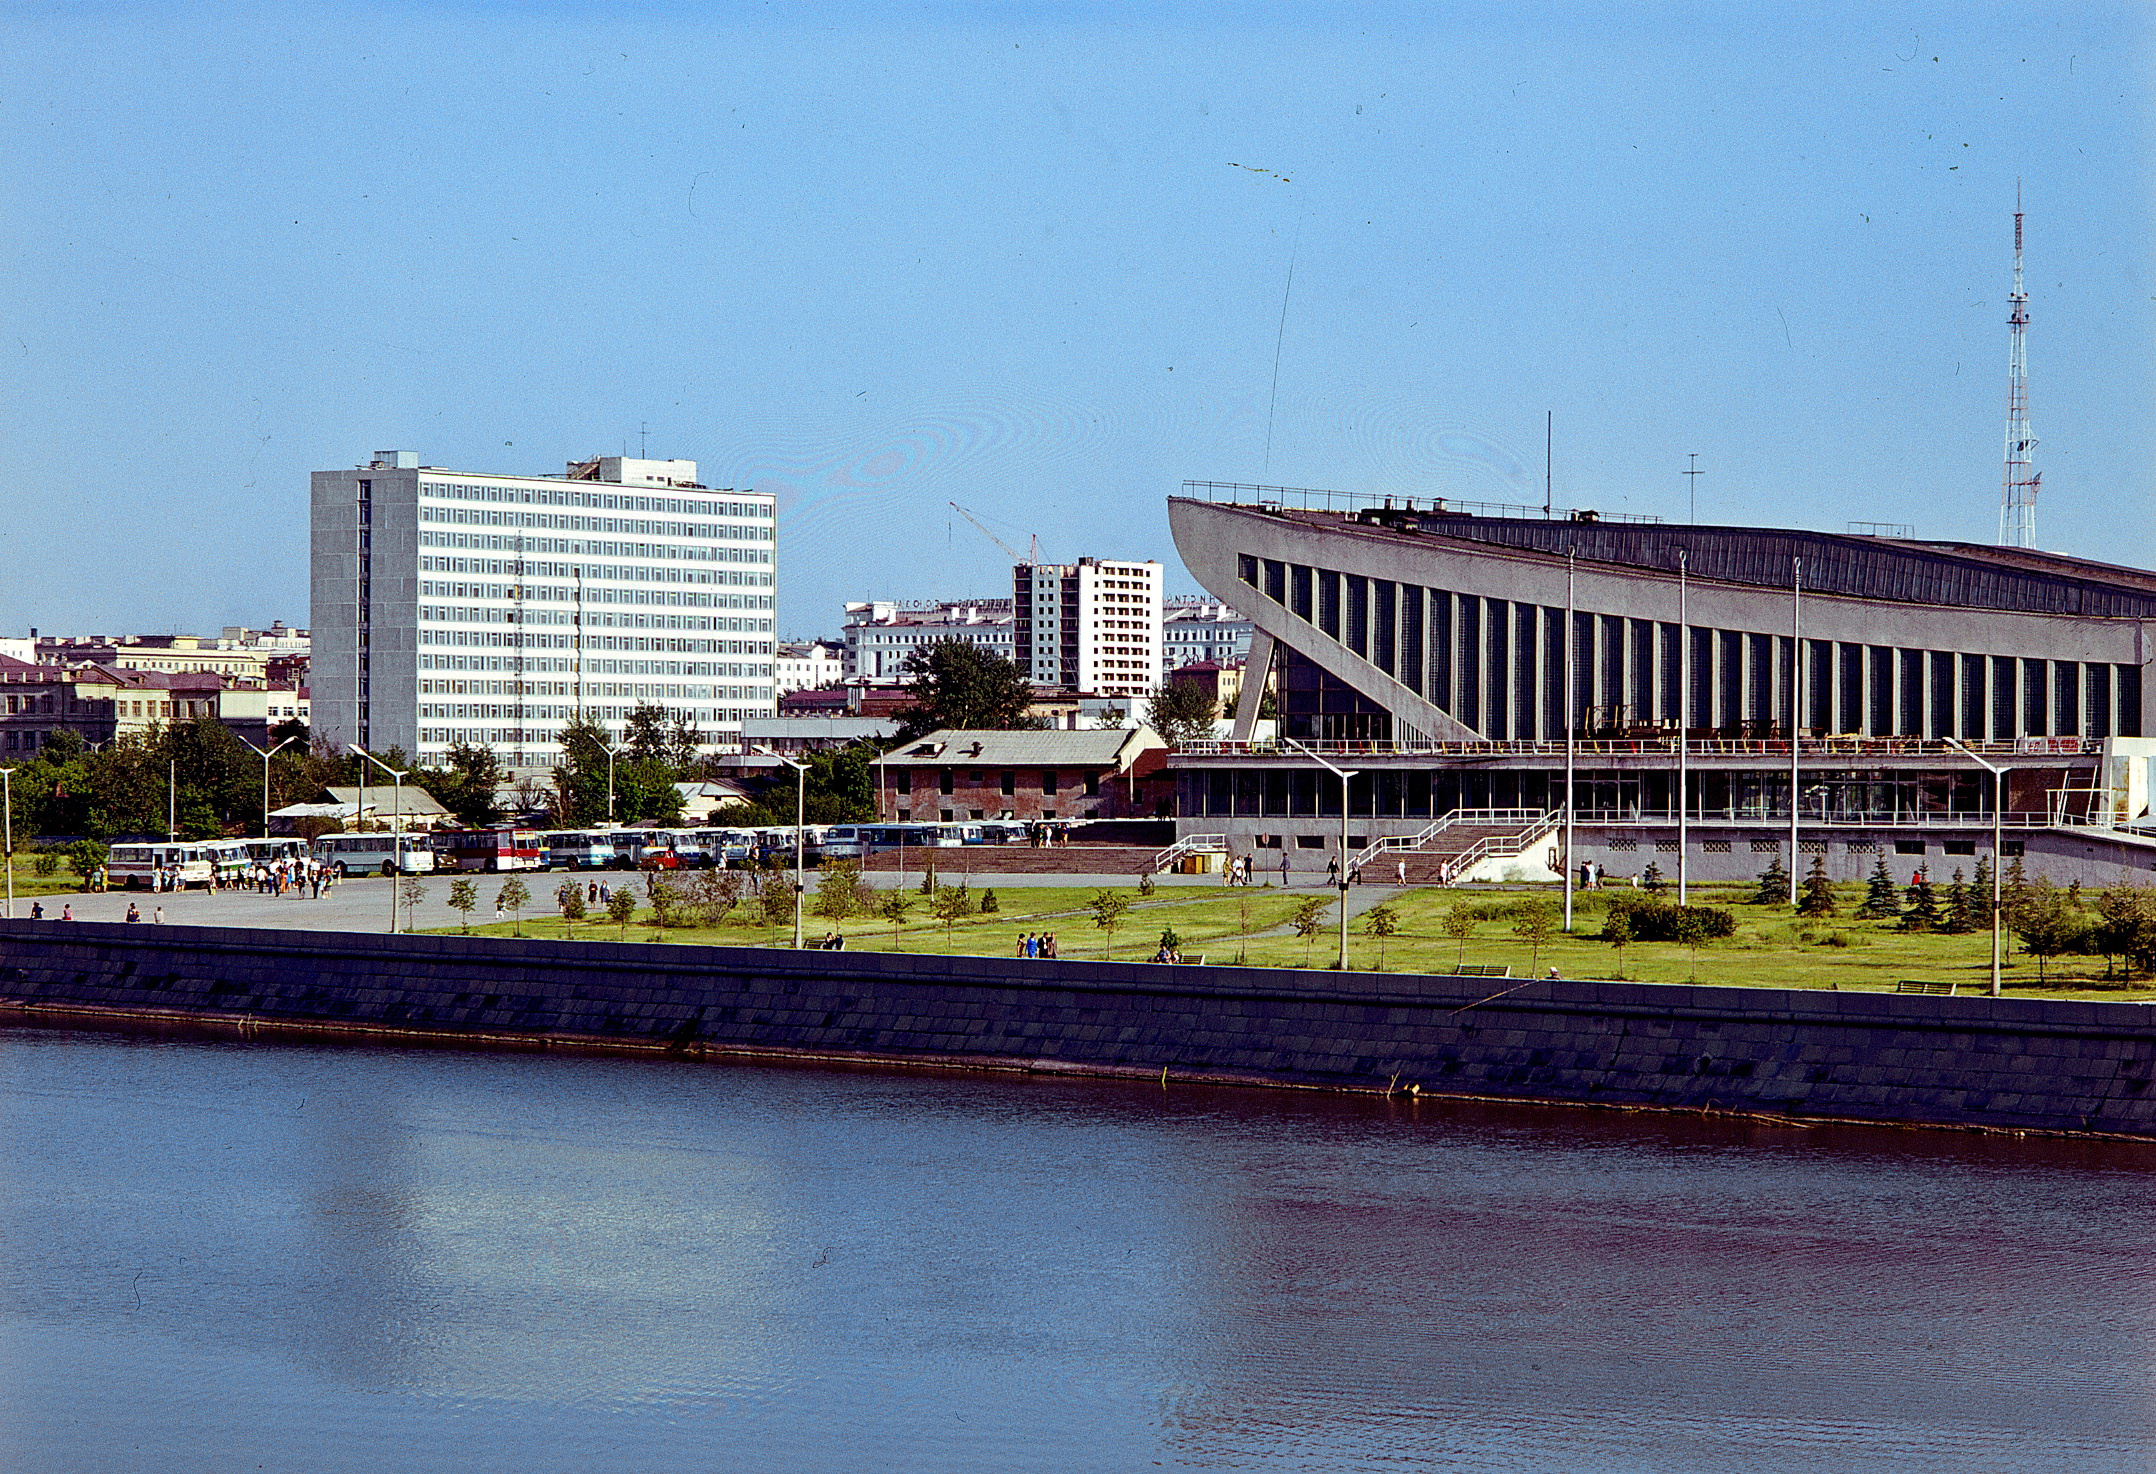 Начнем с простого. Таким был центр Челябинска в 1980-е годы. Ни КРК «Мегаполис», ни «Челябинск-сити» тогда не было